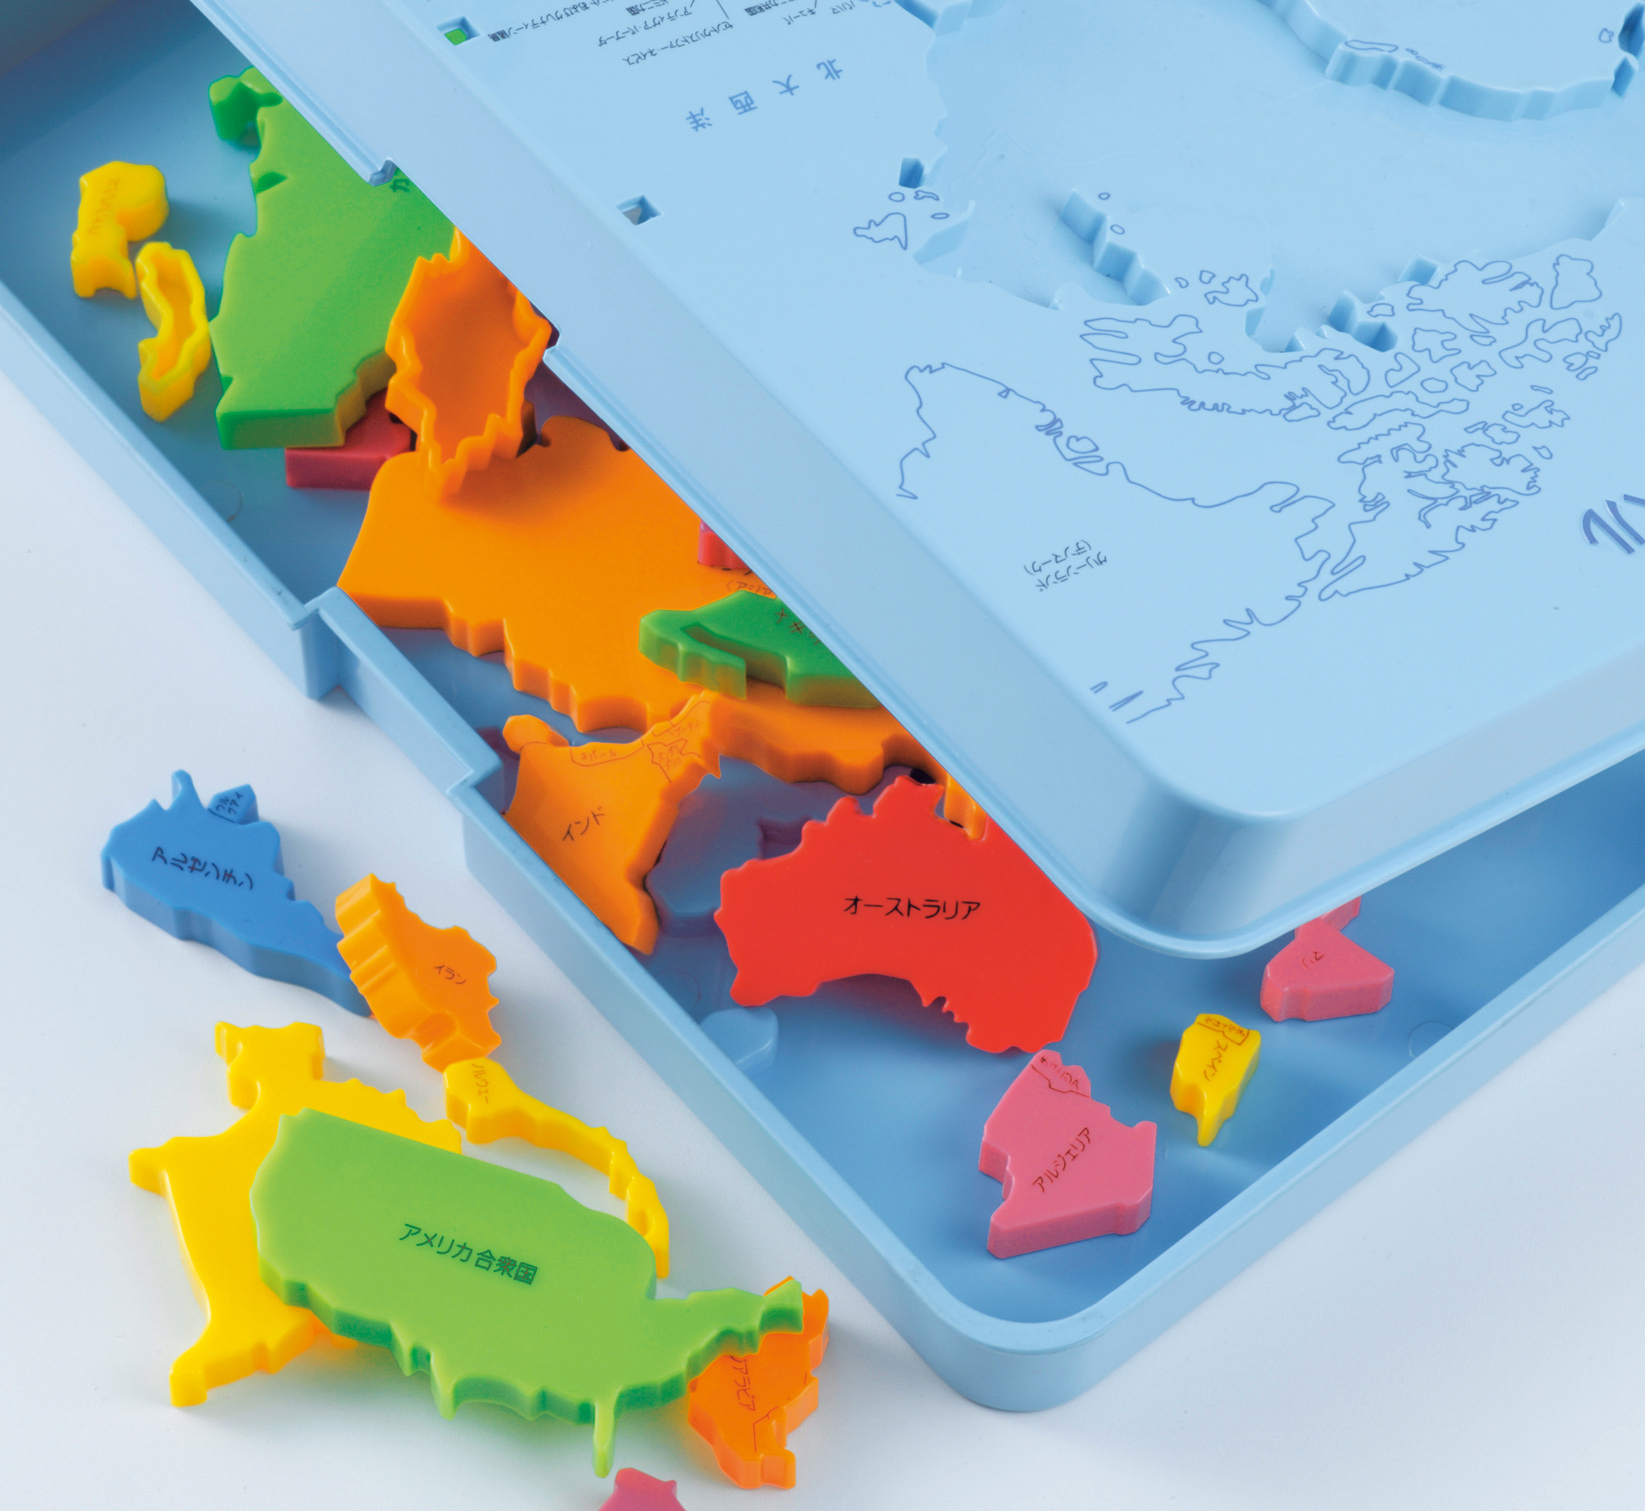 全商品 倍 ラッピング無料 くもん出版 くもんの世界地図パズル 公文 知育玩具 パズル 地図 ギフト プレゼント あす楽対応 こぐま Solga Sowa Pl